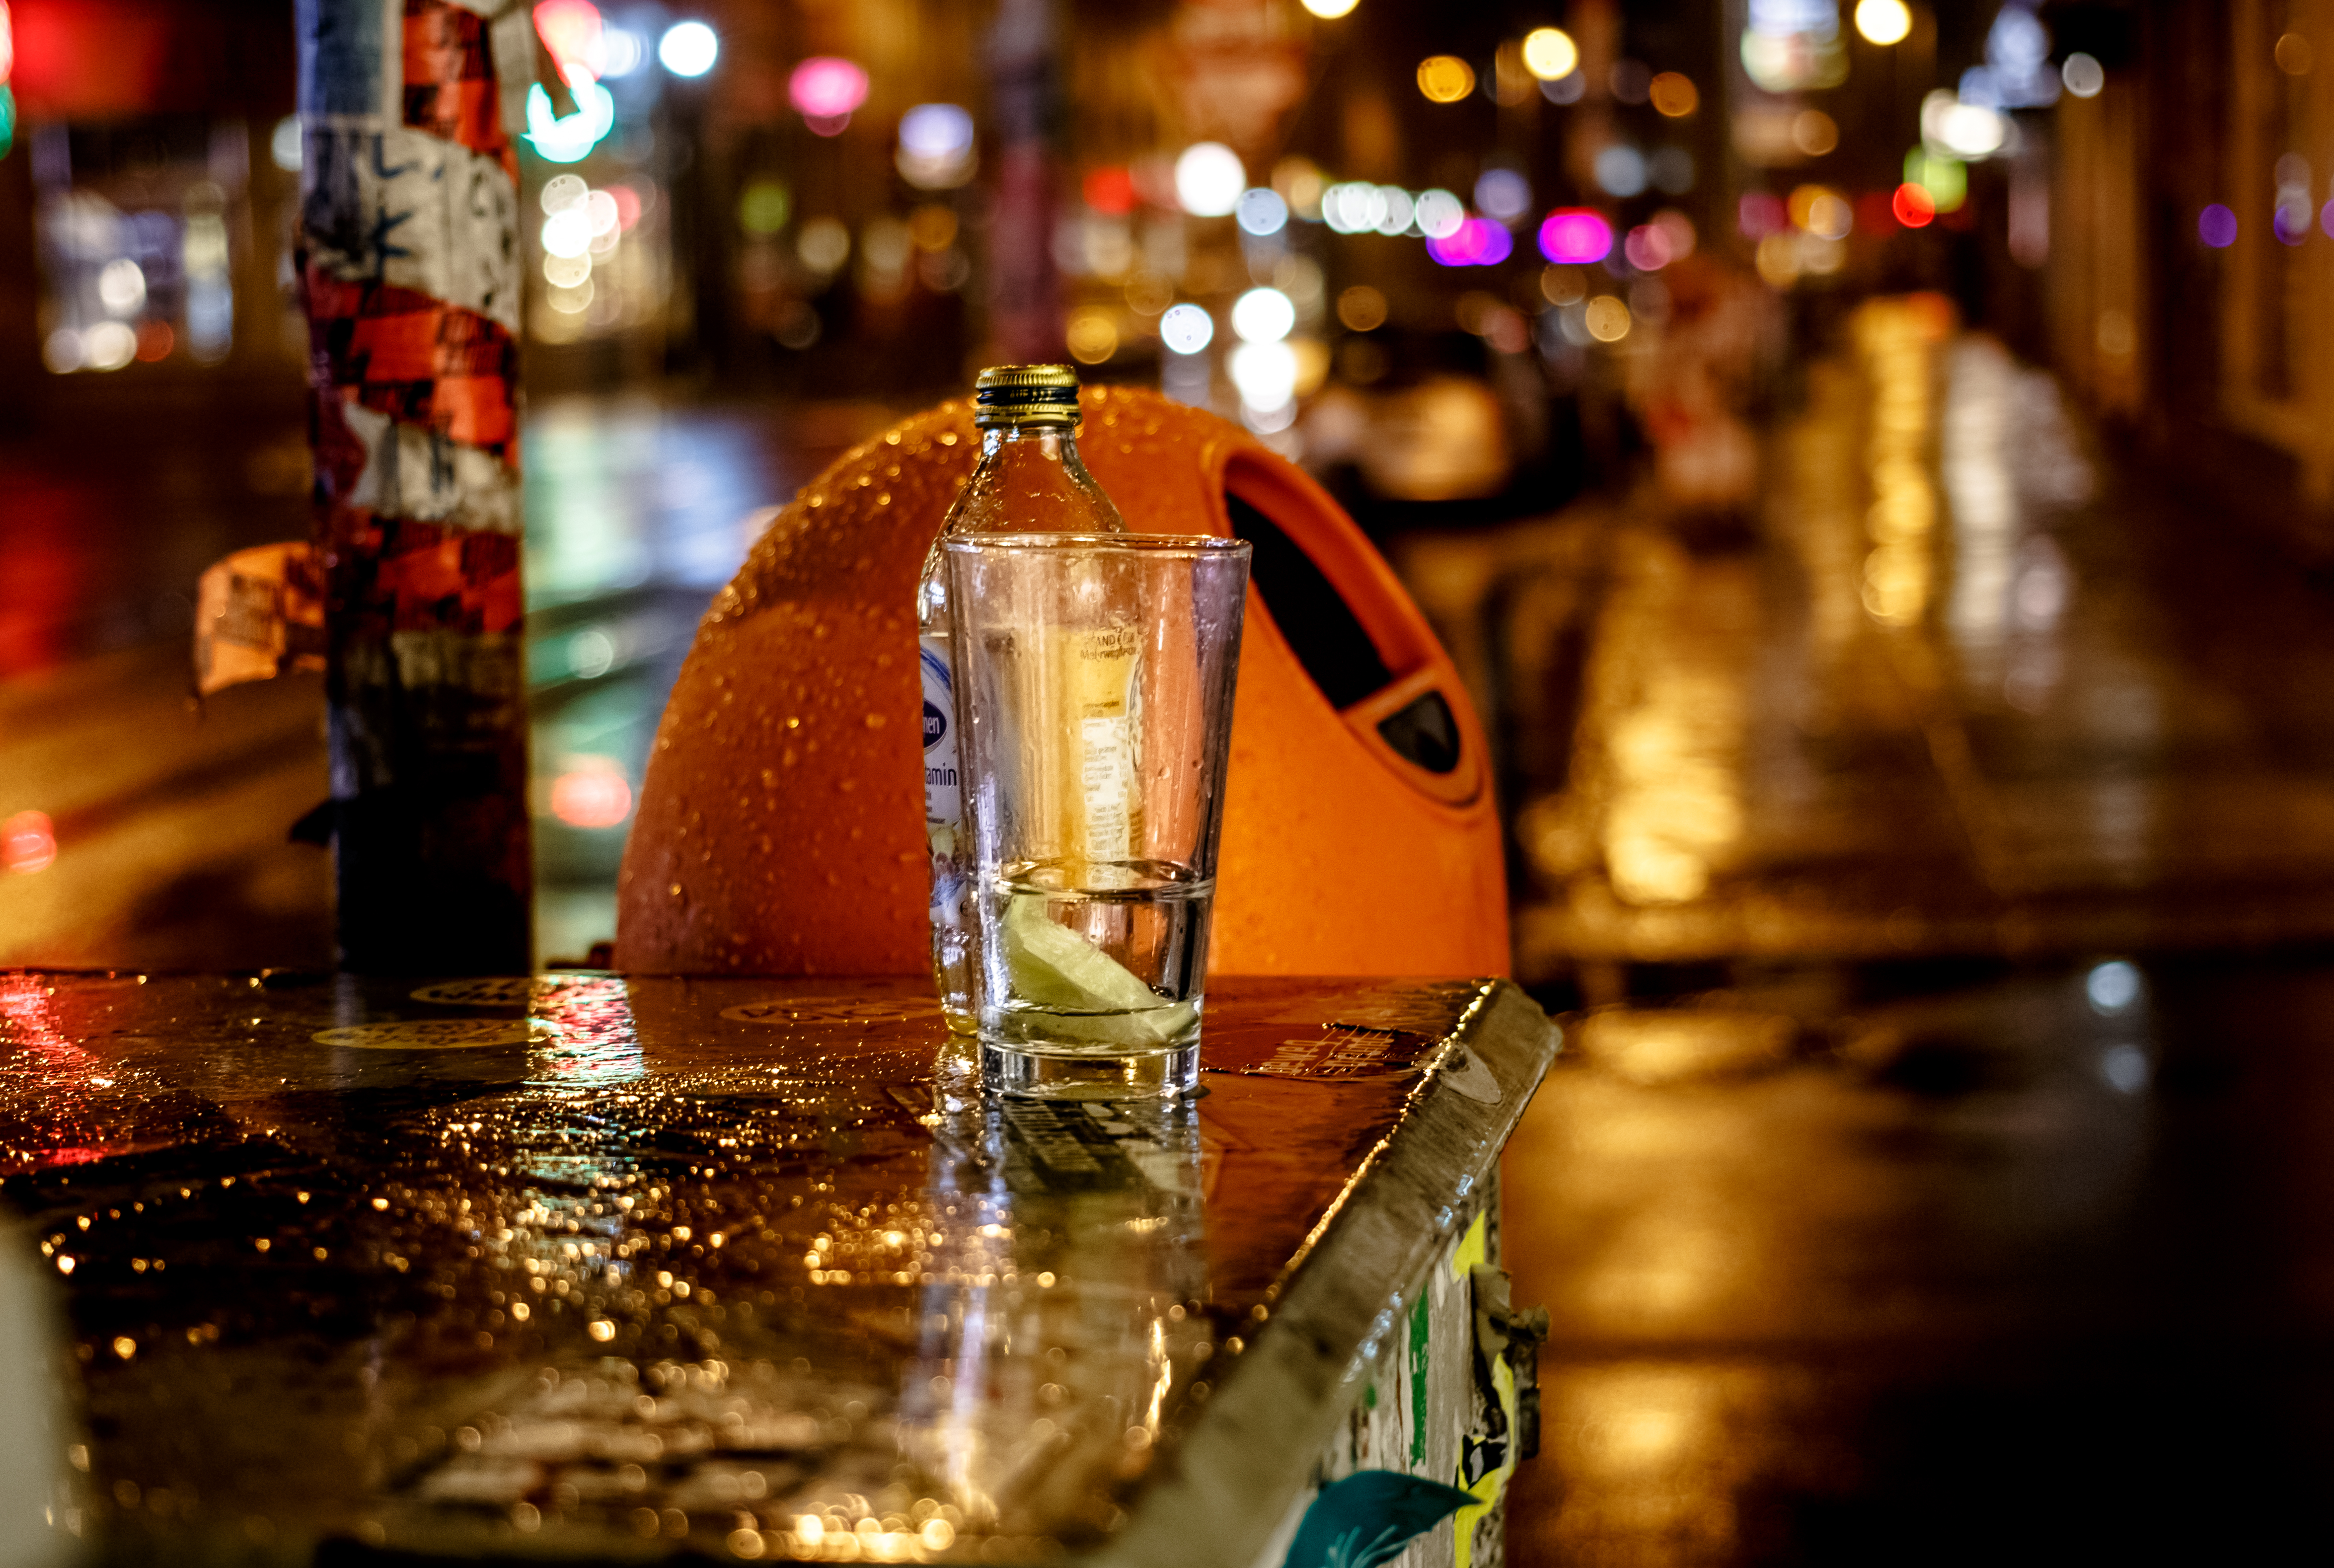 Nächtliche Straßenszene bei Regenwetter in Berlin. Zu sehen ist ein typischer orangefarbener Mülleimer. Davor, auf einem Kasten, steht eine Flasche und ein Glas. 